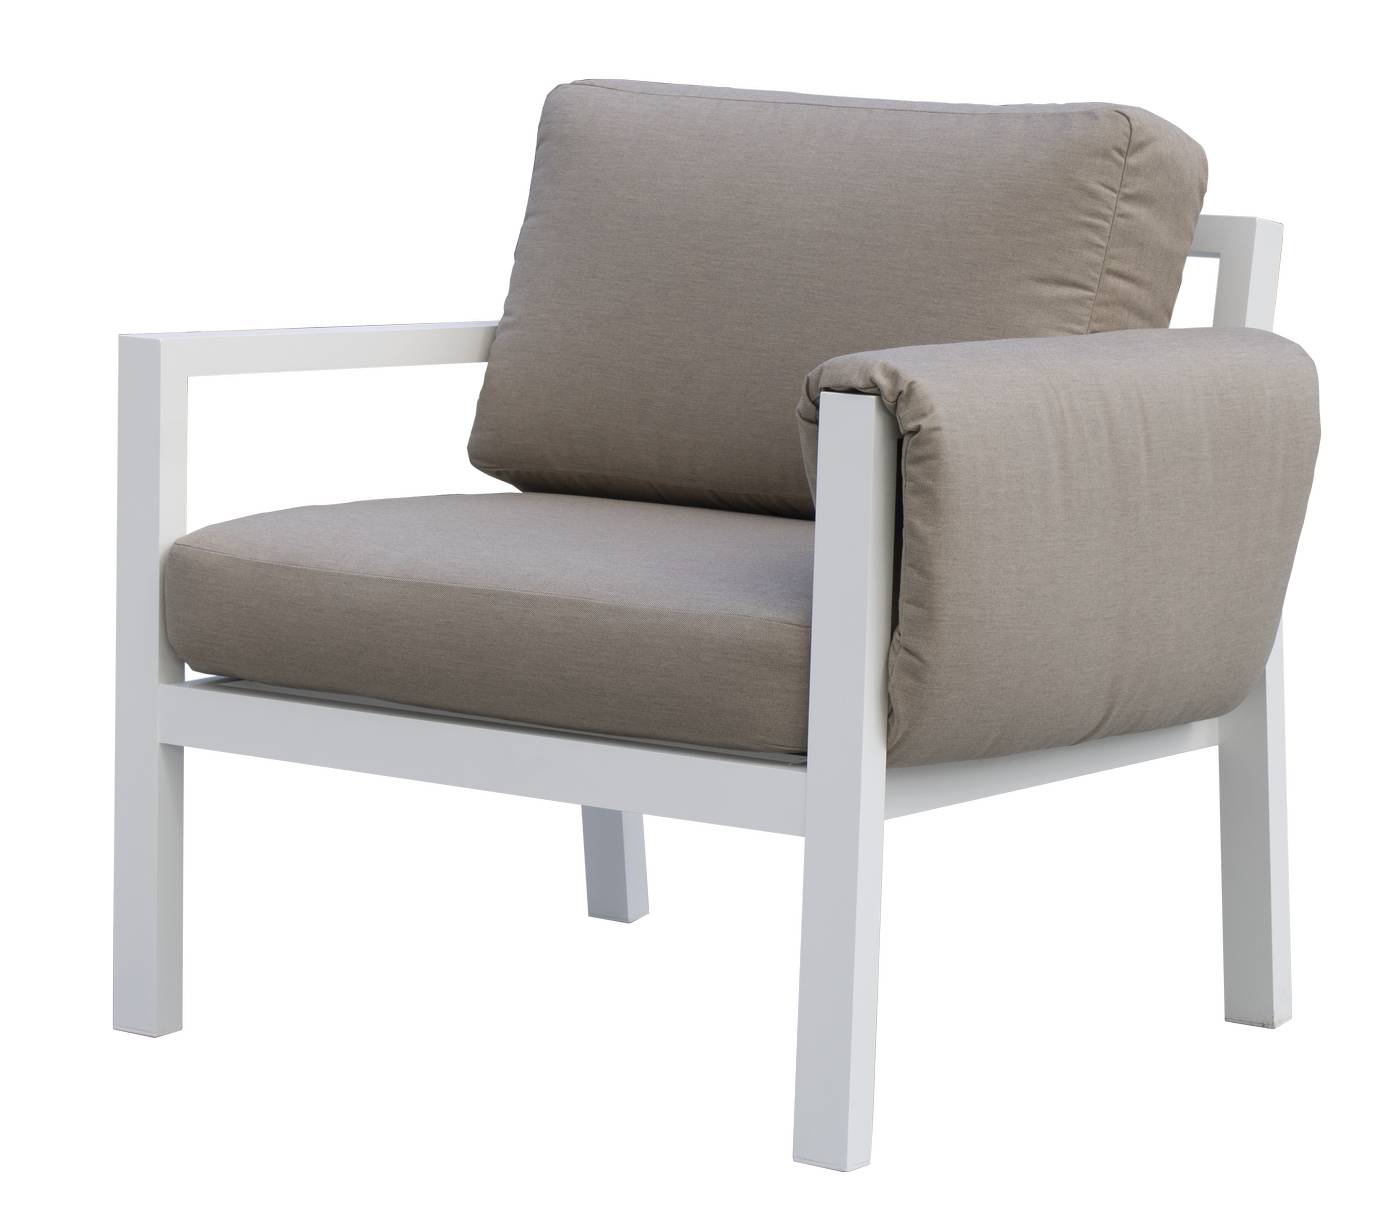 Set Arizona-10 - Conjunto aluminio con opción de cojines en los brazos: sofá de 3 plazas + 2 sillones + 1 mesa de centro + 2 reposapiés. En color: blanco, antracita, marrón, champagne o plata.